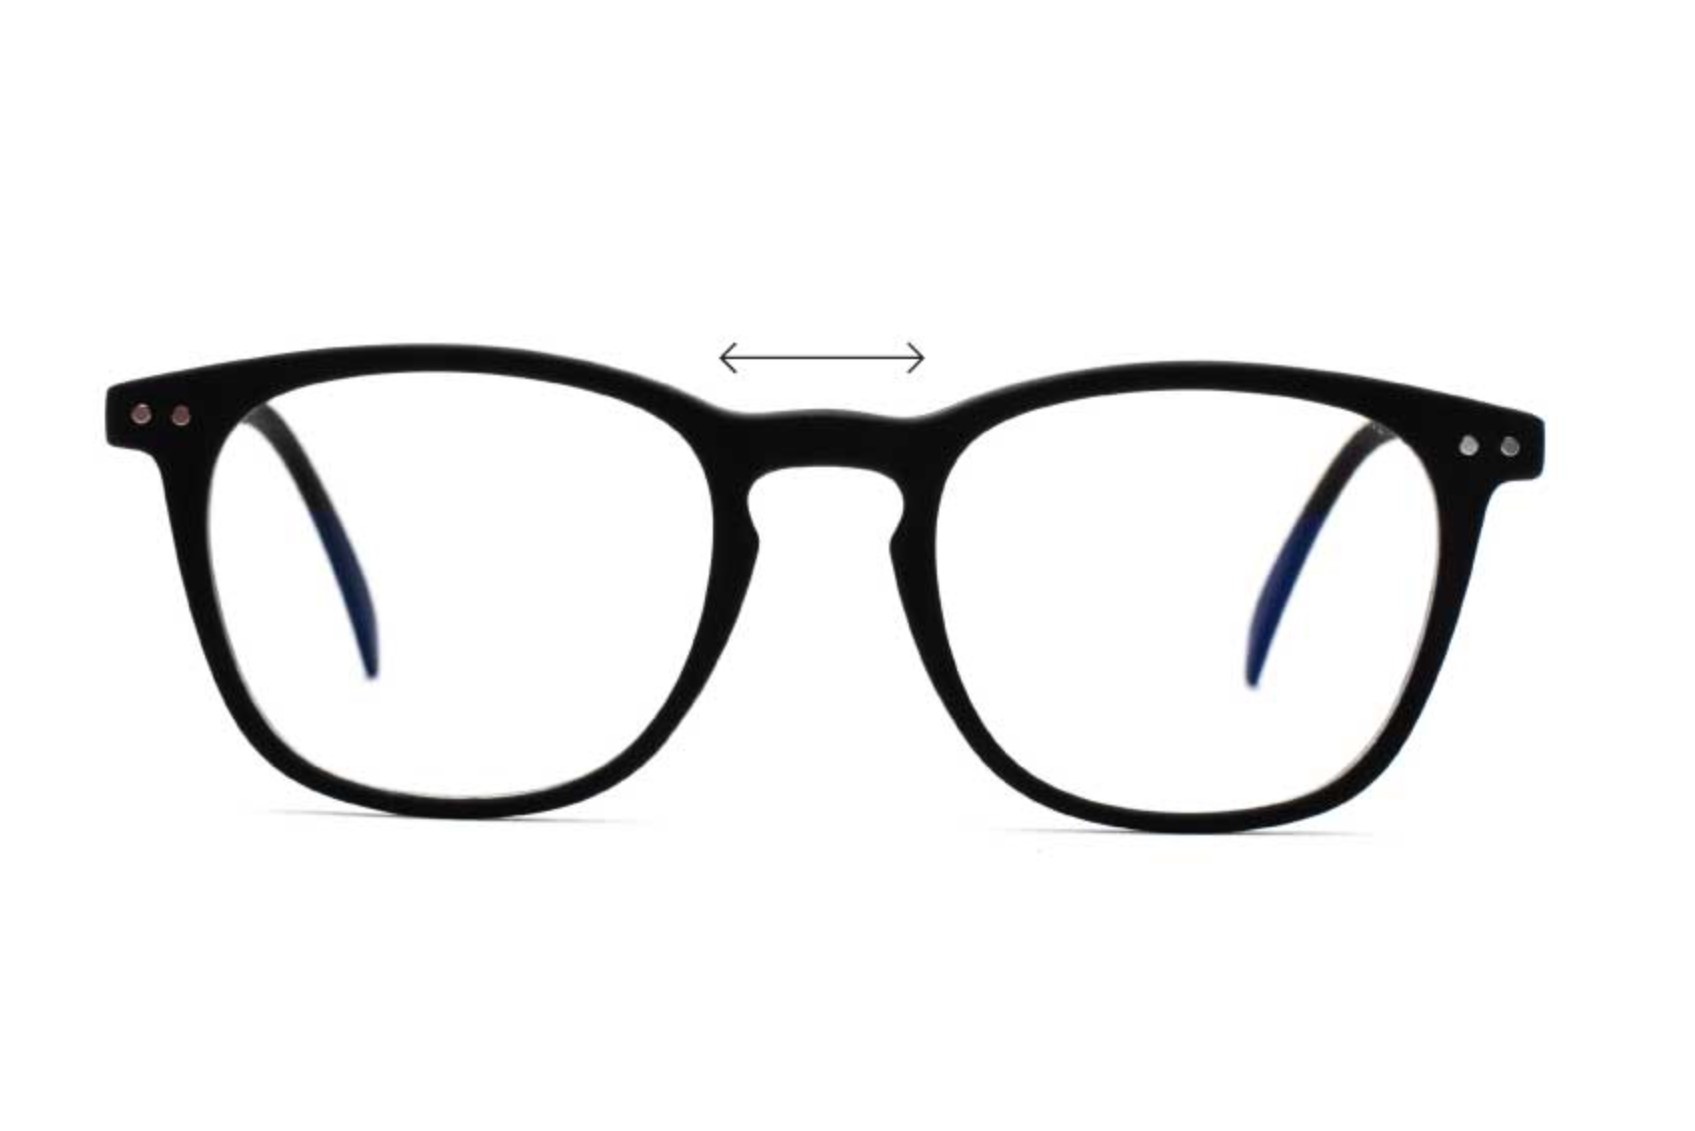 – William UVAllBlue w Blue Light Glasses, Women's